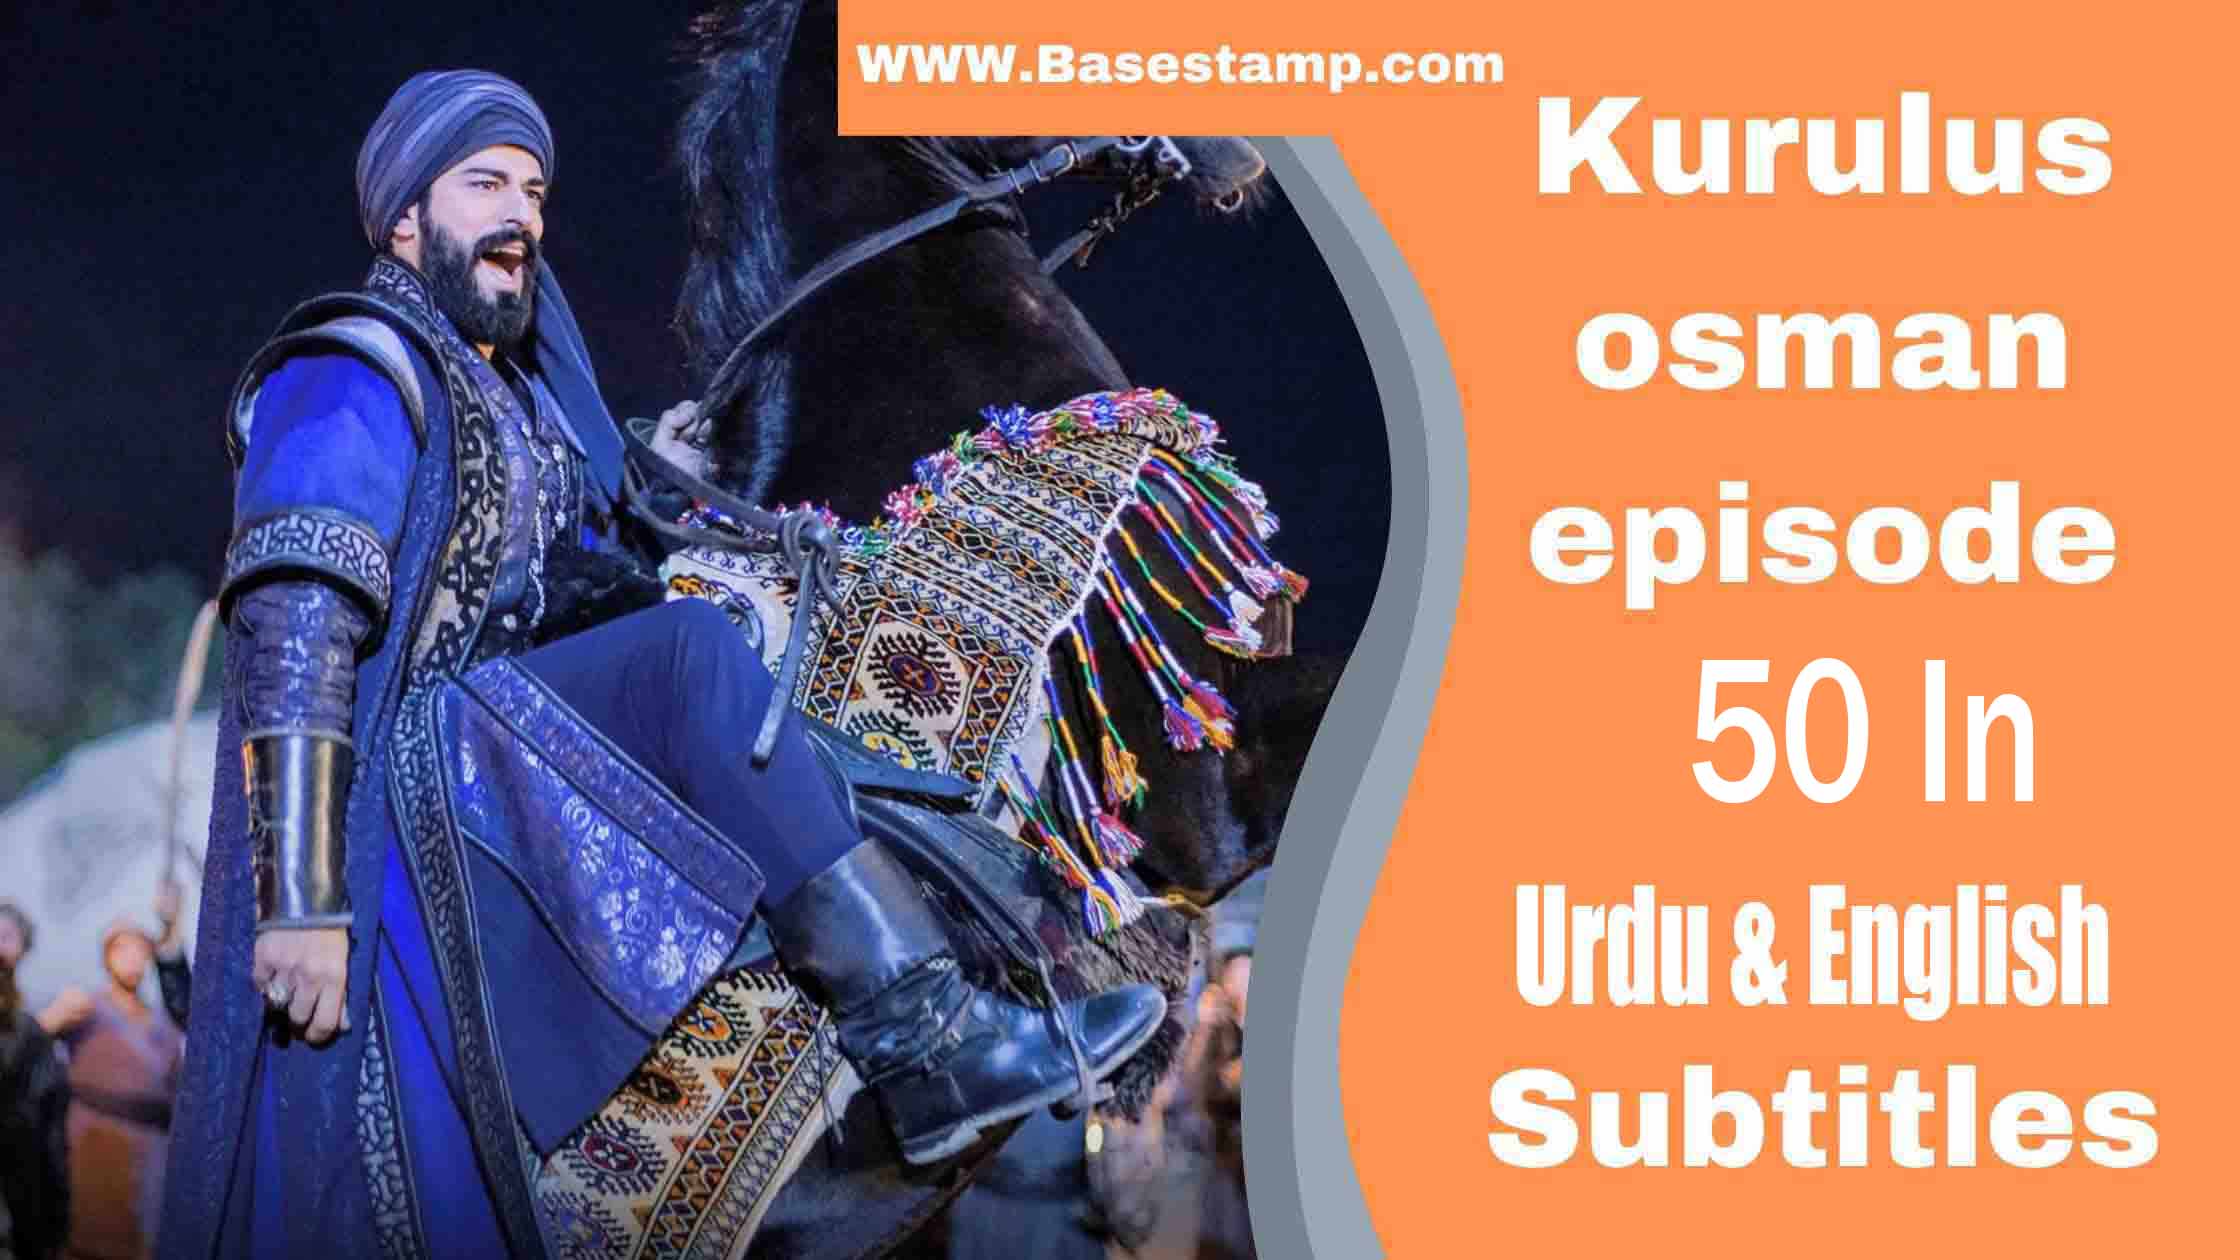 Kurulus Osman Episode 50 In Urdu & English Subtitles